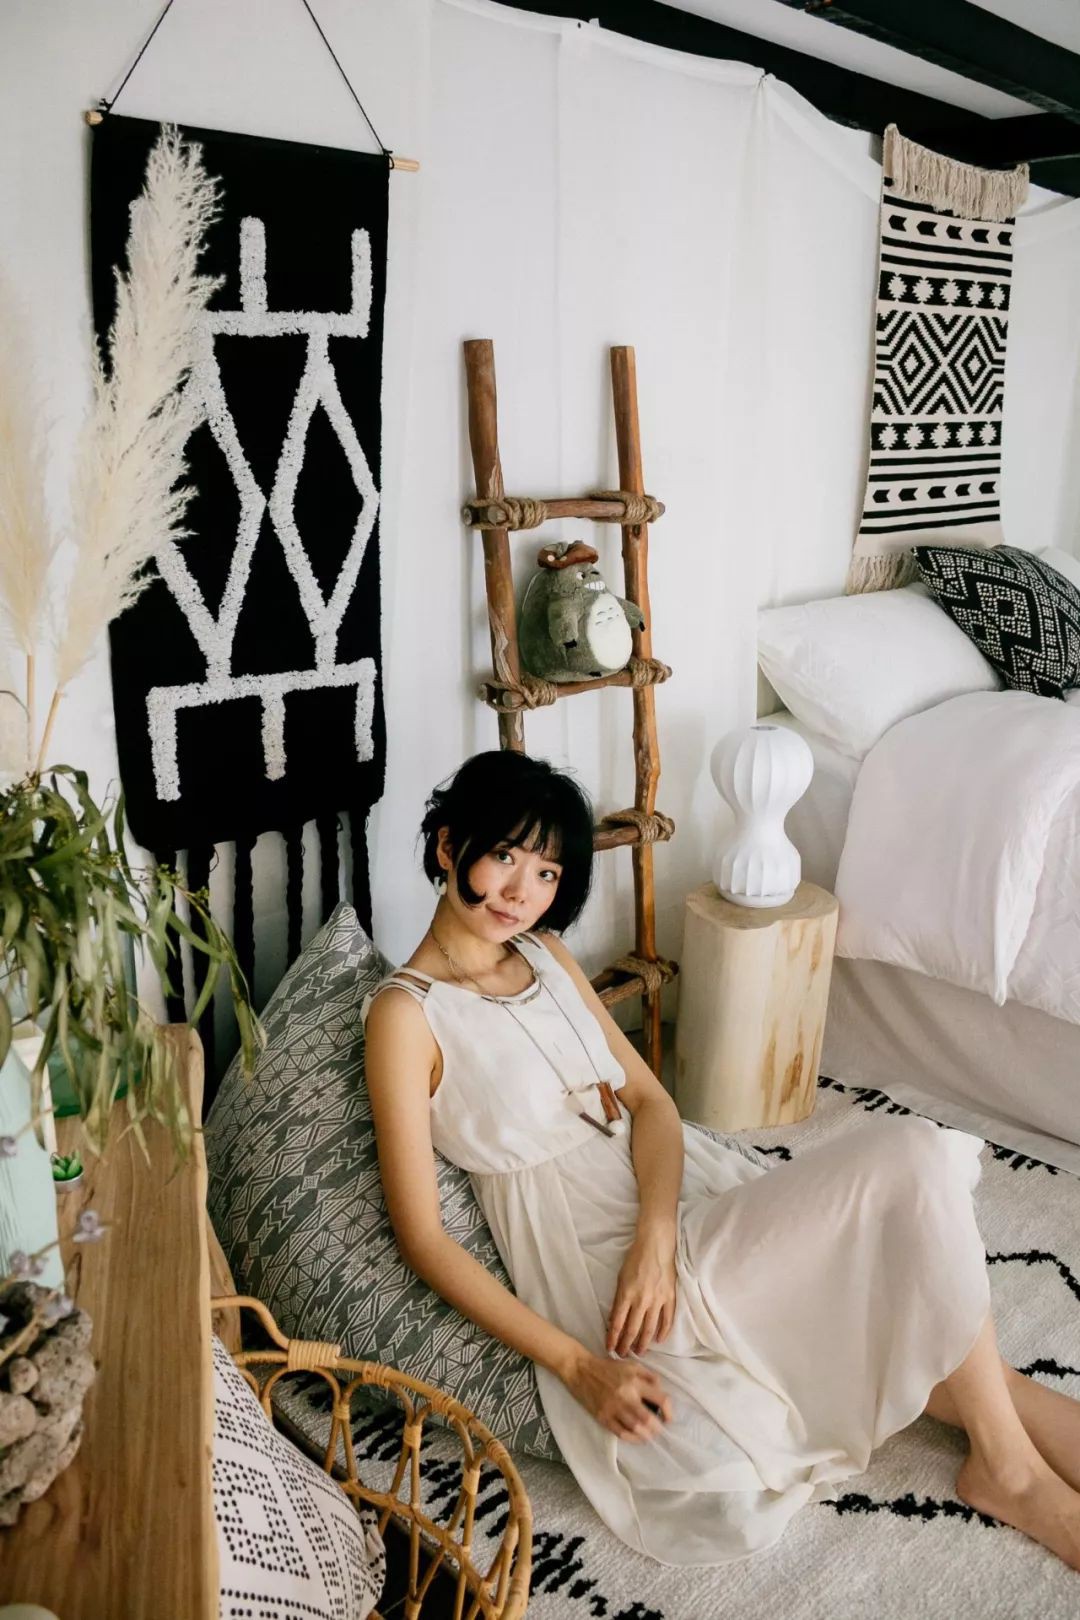 Phòng ngủ 26m2 cũ kỹ, tẻ nhạt biến thành không gian sống đáng yêu theo phong cách Maroc của cô gái trẻ - Ảnh 2.